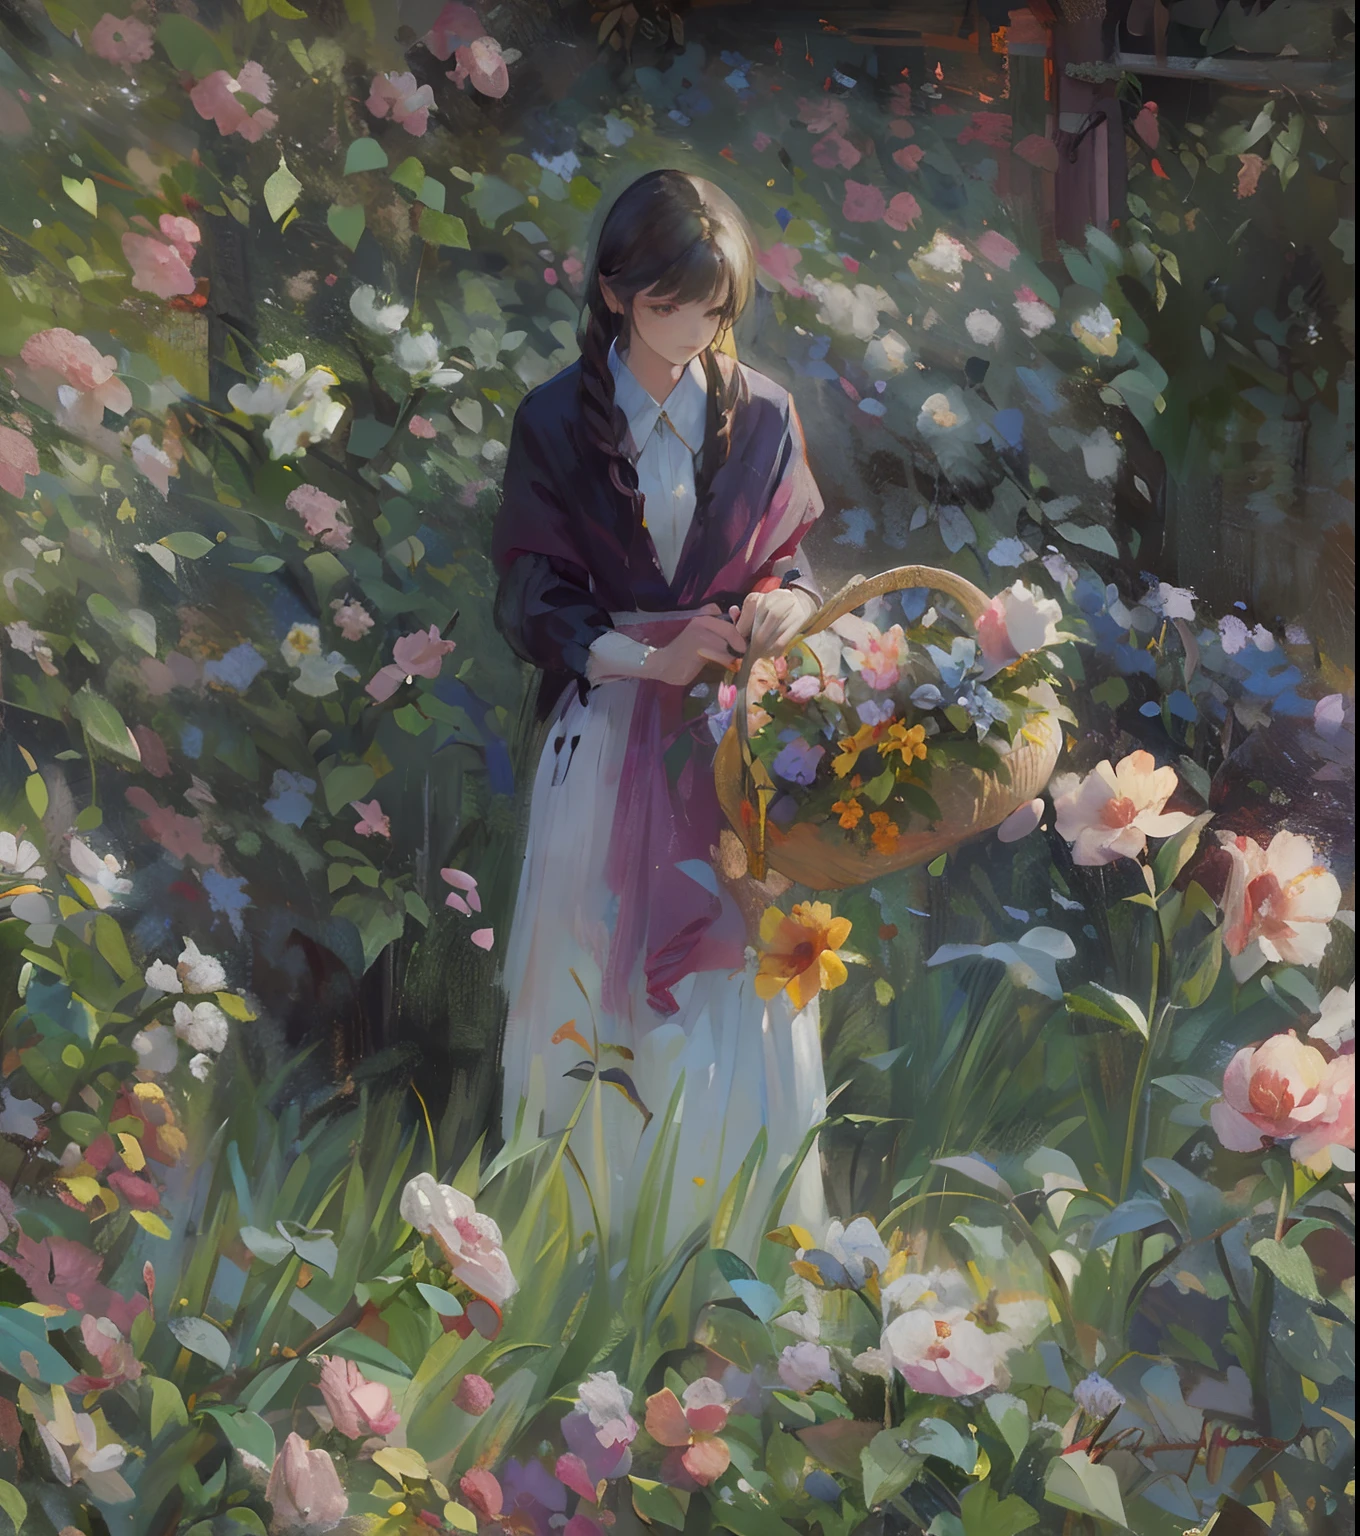 cuadro de una mujer en un jardín con flores y una canasta de flores, recogiendo flores, resolución 24k, artístico, impresionismo, hiperdetallado,